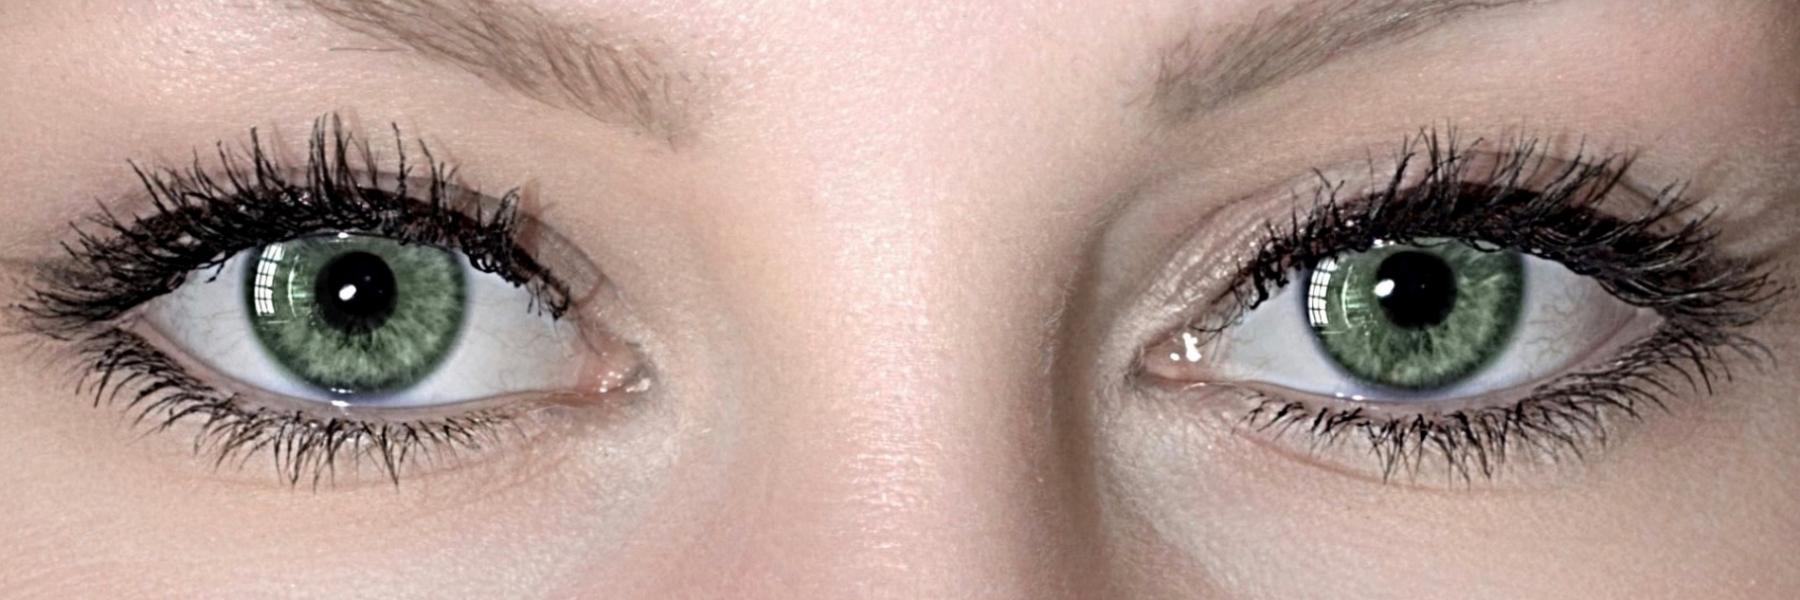 ١١ طريقة طبيعية للتغلب على تعب العينين كل صباح